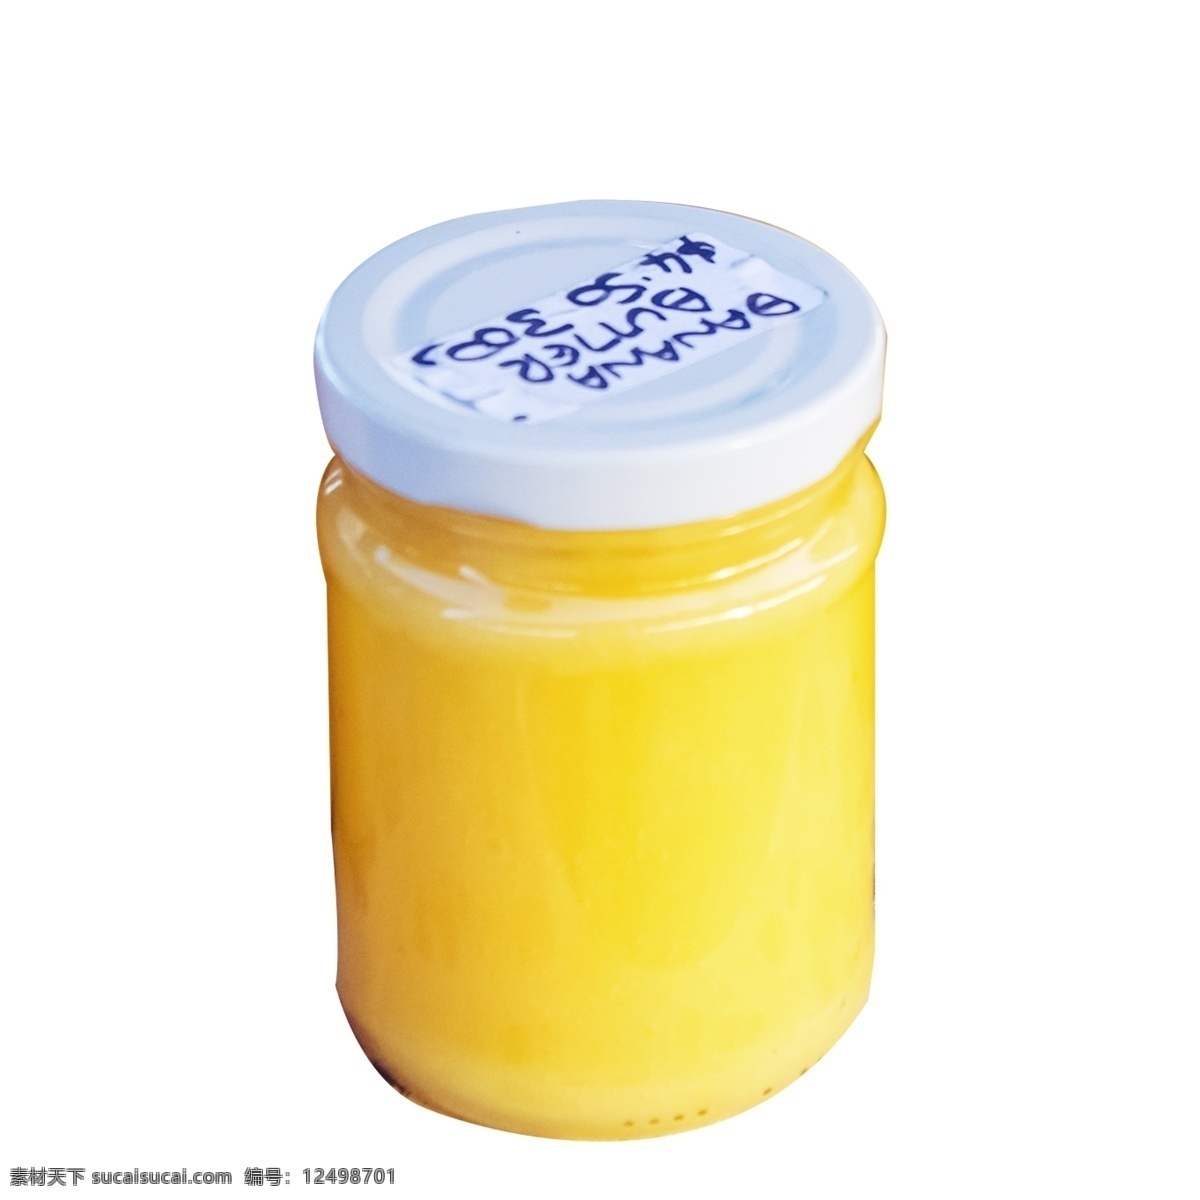 瓶 玻璃瓶 柠檬 果汁 免 扣 图 好喝 黄色 果汁瓶 一瓶 柠檬果汁 免扣图